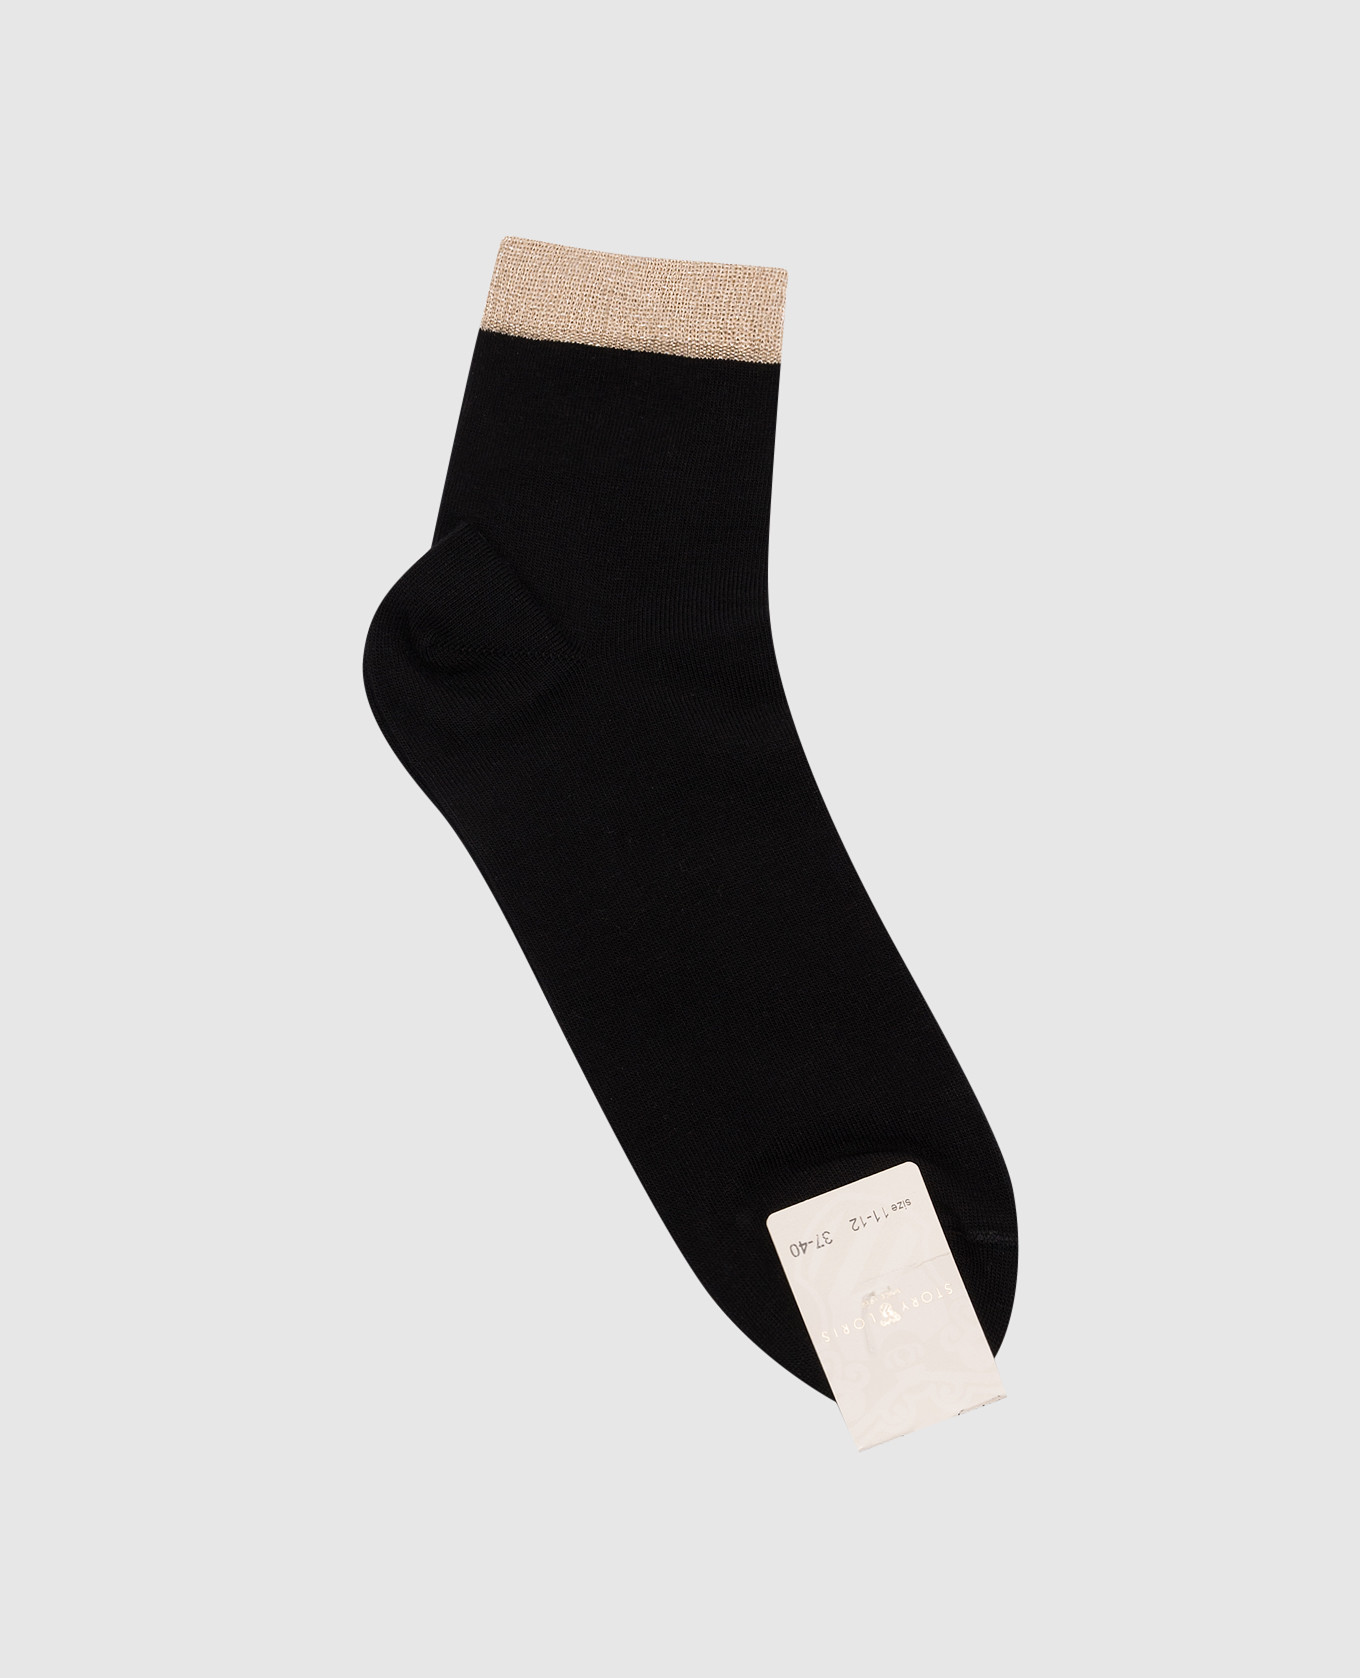 Children's black socks with lurex